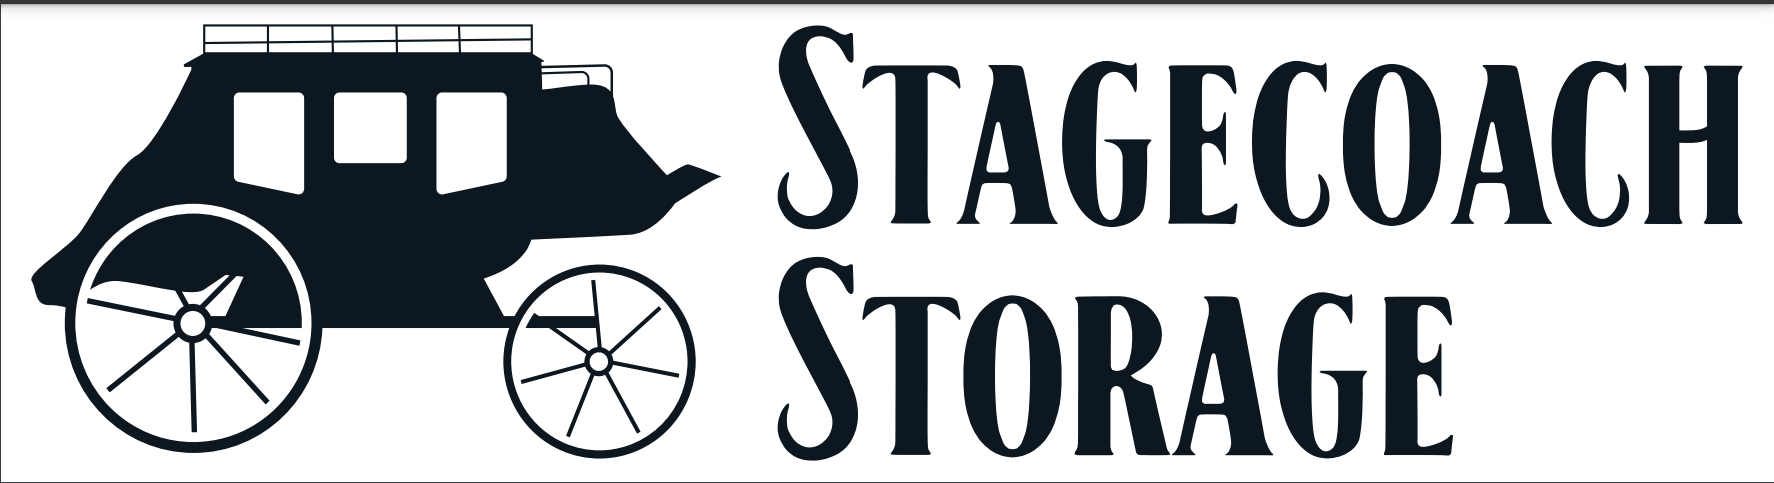 Stagecoach Storage logo